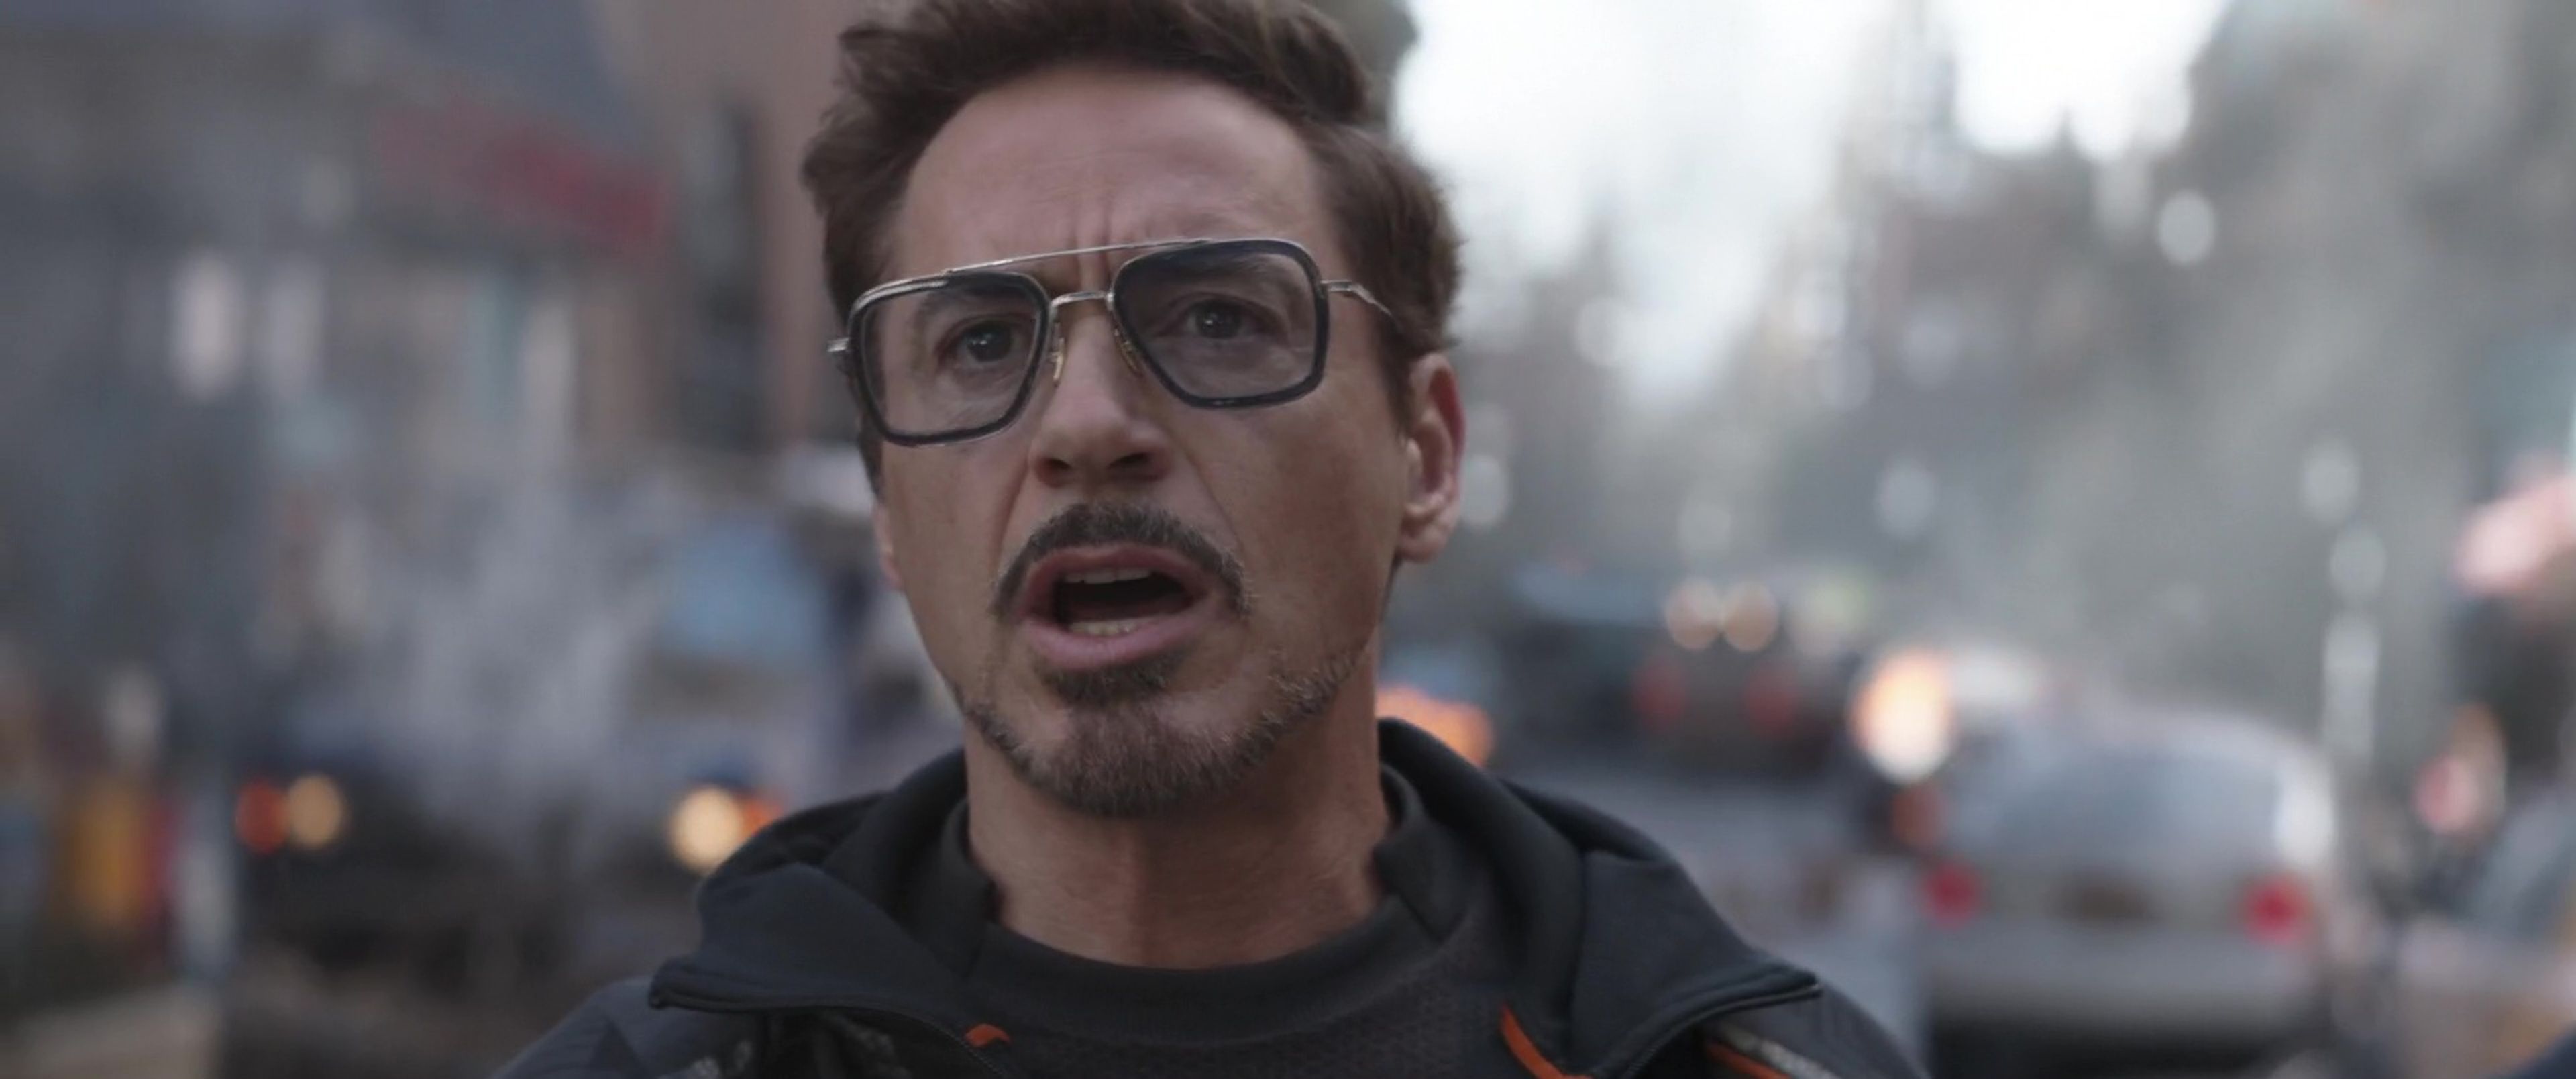 Dónde comprar las gafas de sol de Tony Stark en Iron Man y Vengadores | Insider